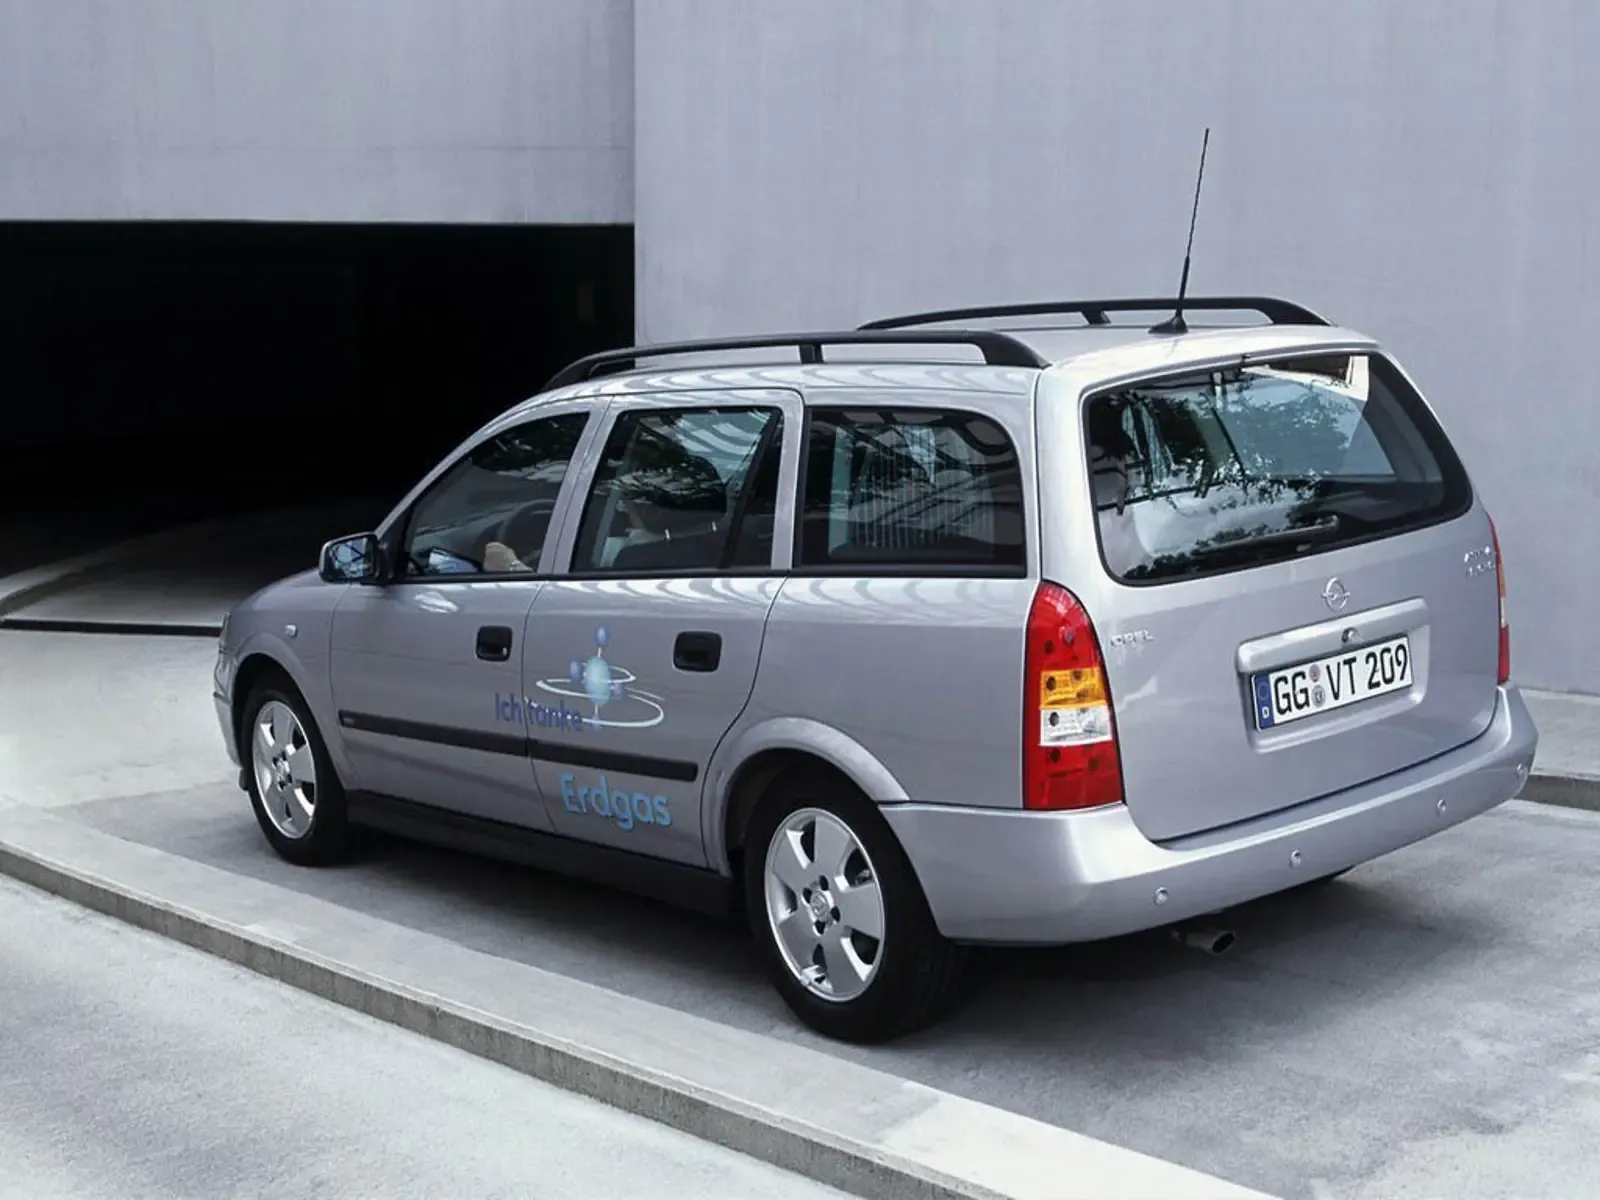 Джи караван. Opel Astra универсал 1998. Opel Astra g Caravan 2003. Opel Astra Caravan универсал.